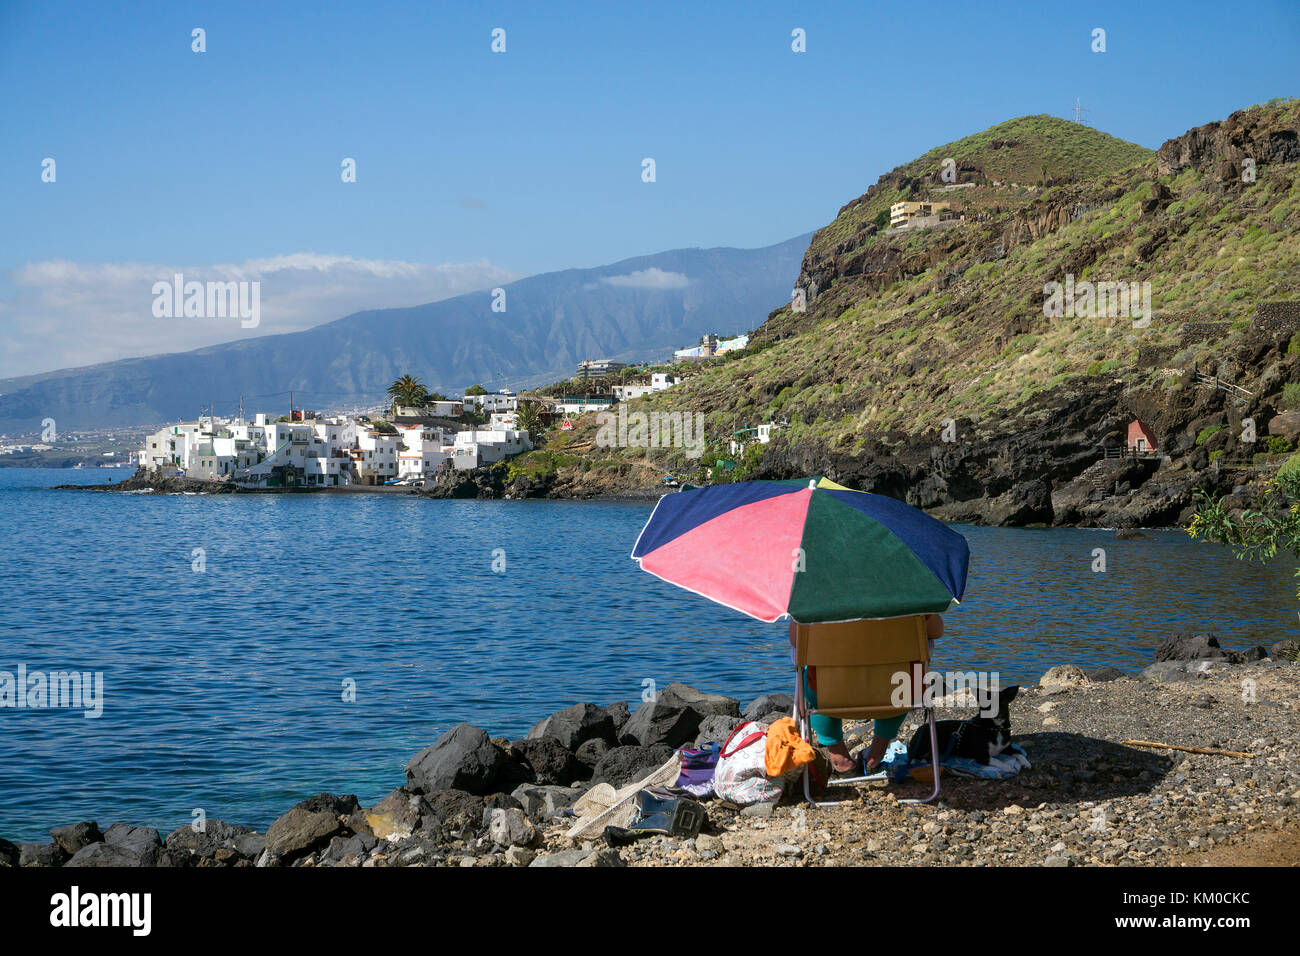 Das kleine Fischerdorf El Varadero bei tabaiba, Nort-Osten der Insel, Teneriffa, Kanarische Inseln, Spanien Stockfoto